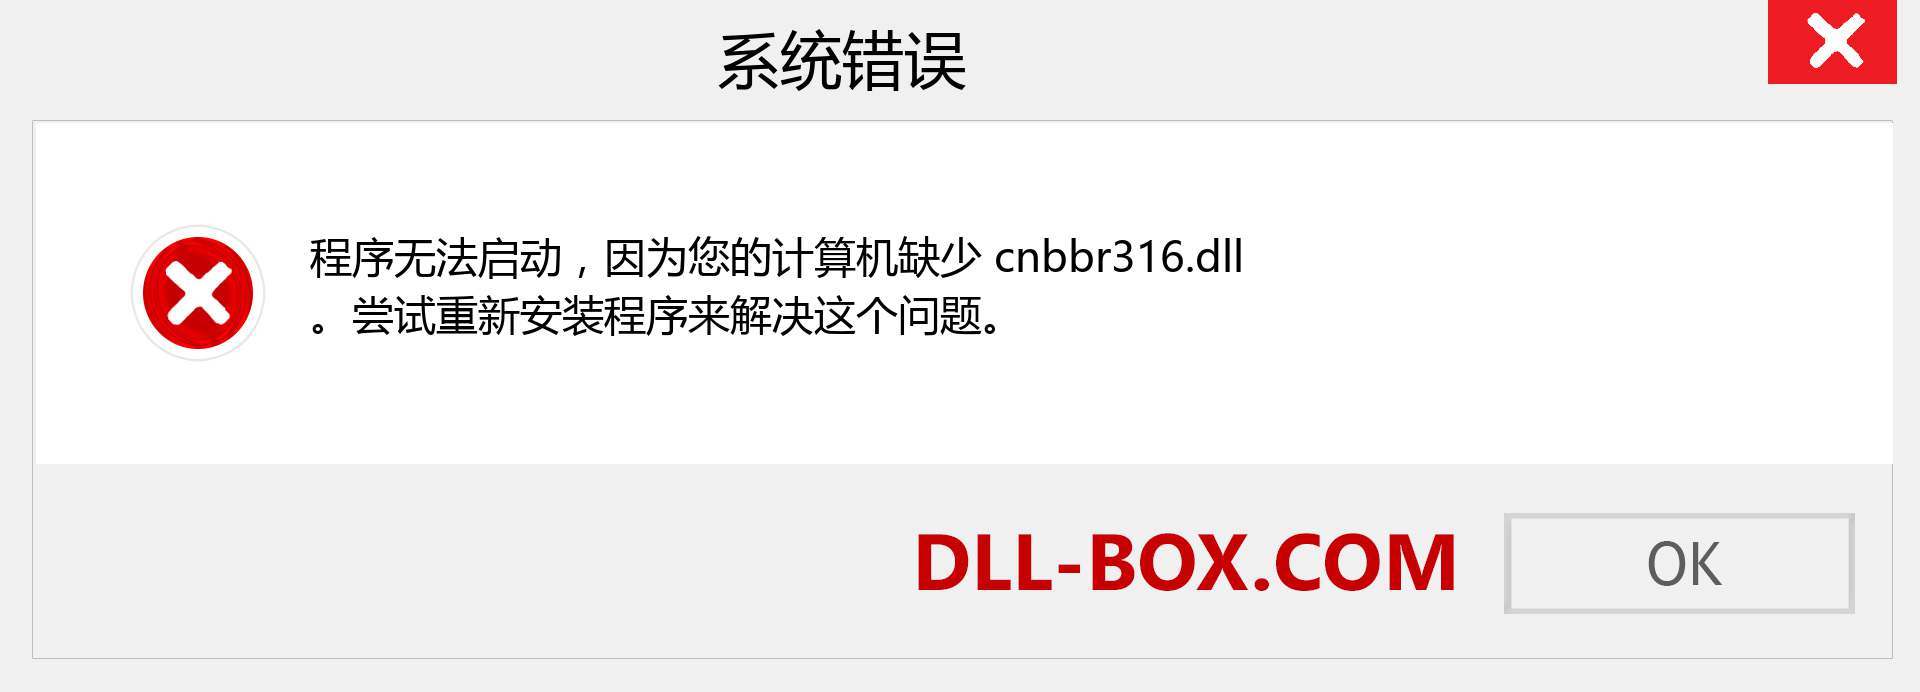 cnbbr316.dll 文件丢失？。 适用于 Windows 7、8、10 的下载 - 修复 Windows、照片、图像上的 cnbbr316 dll 丢失错误